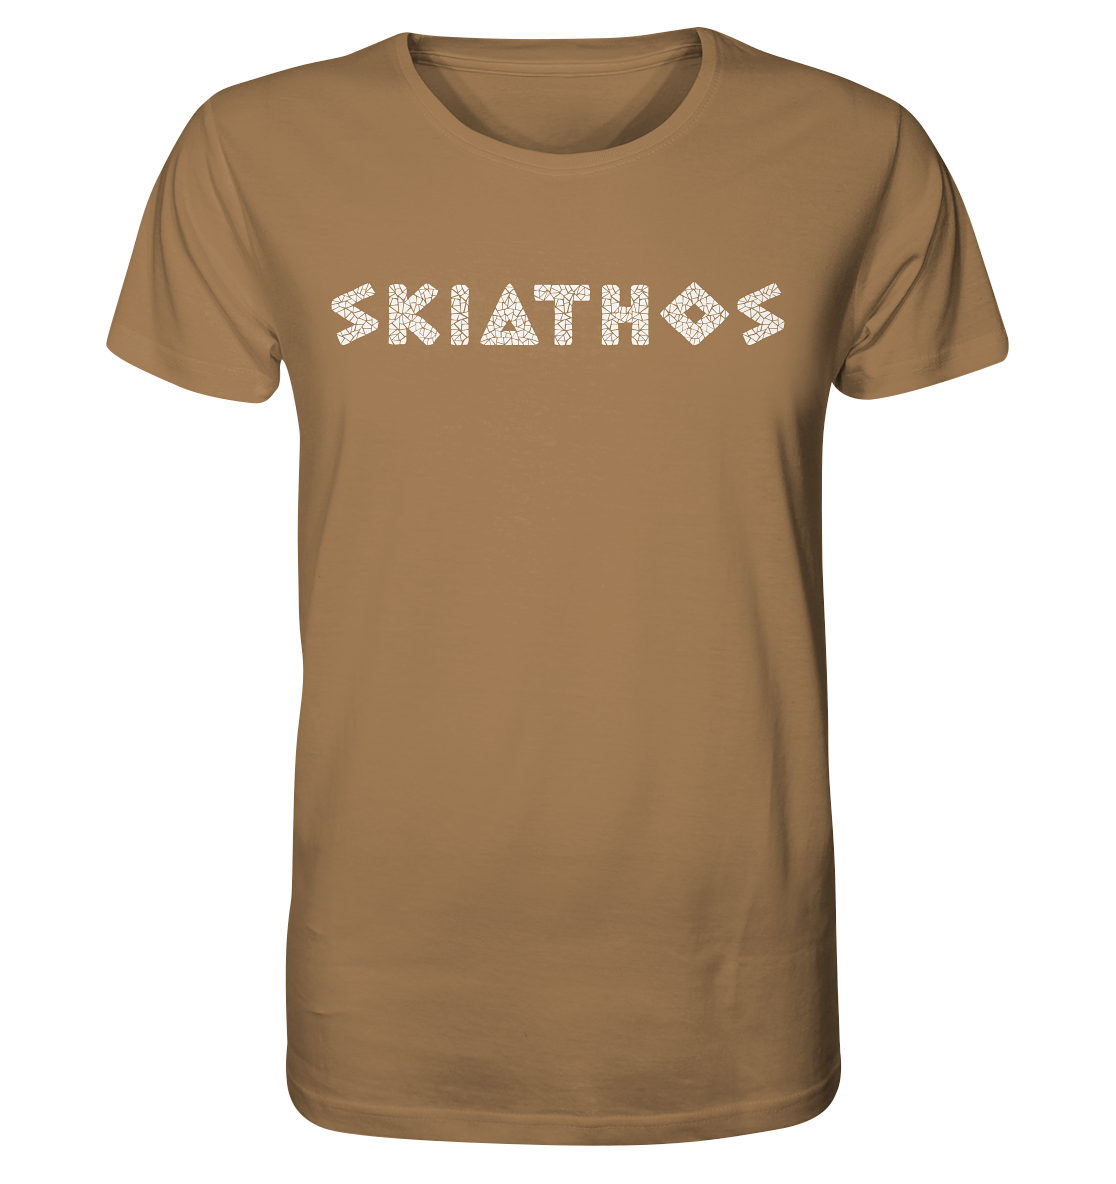 Skiathos Mosaik - Organic Shirt